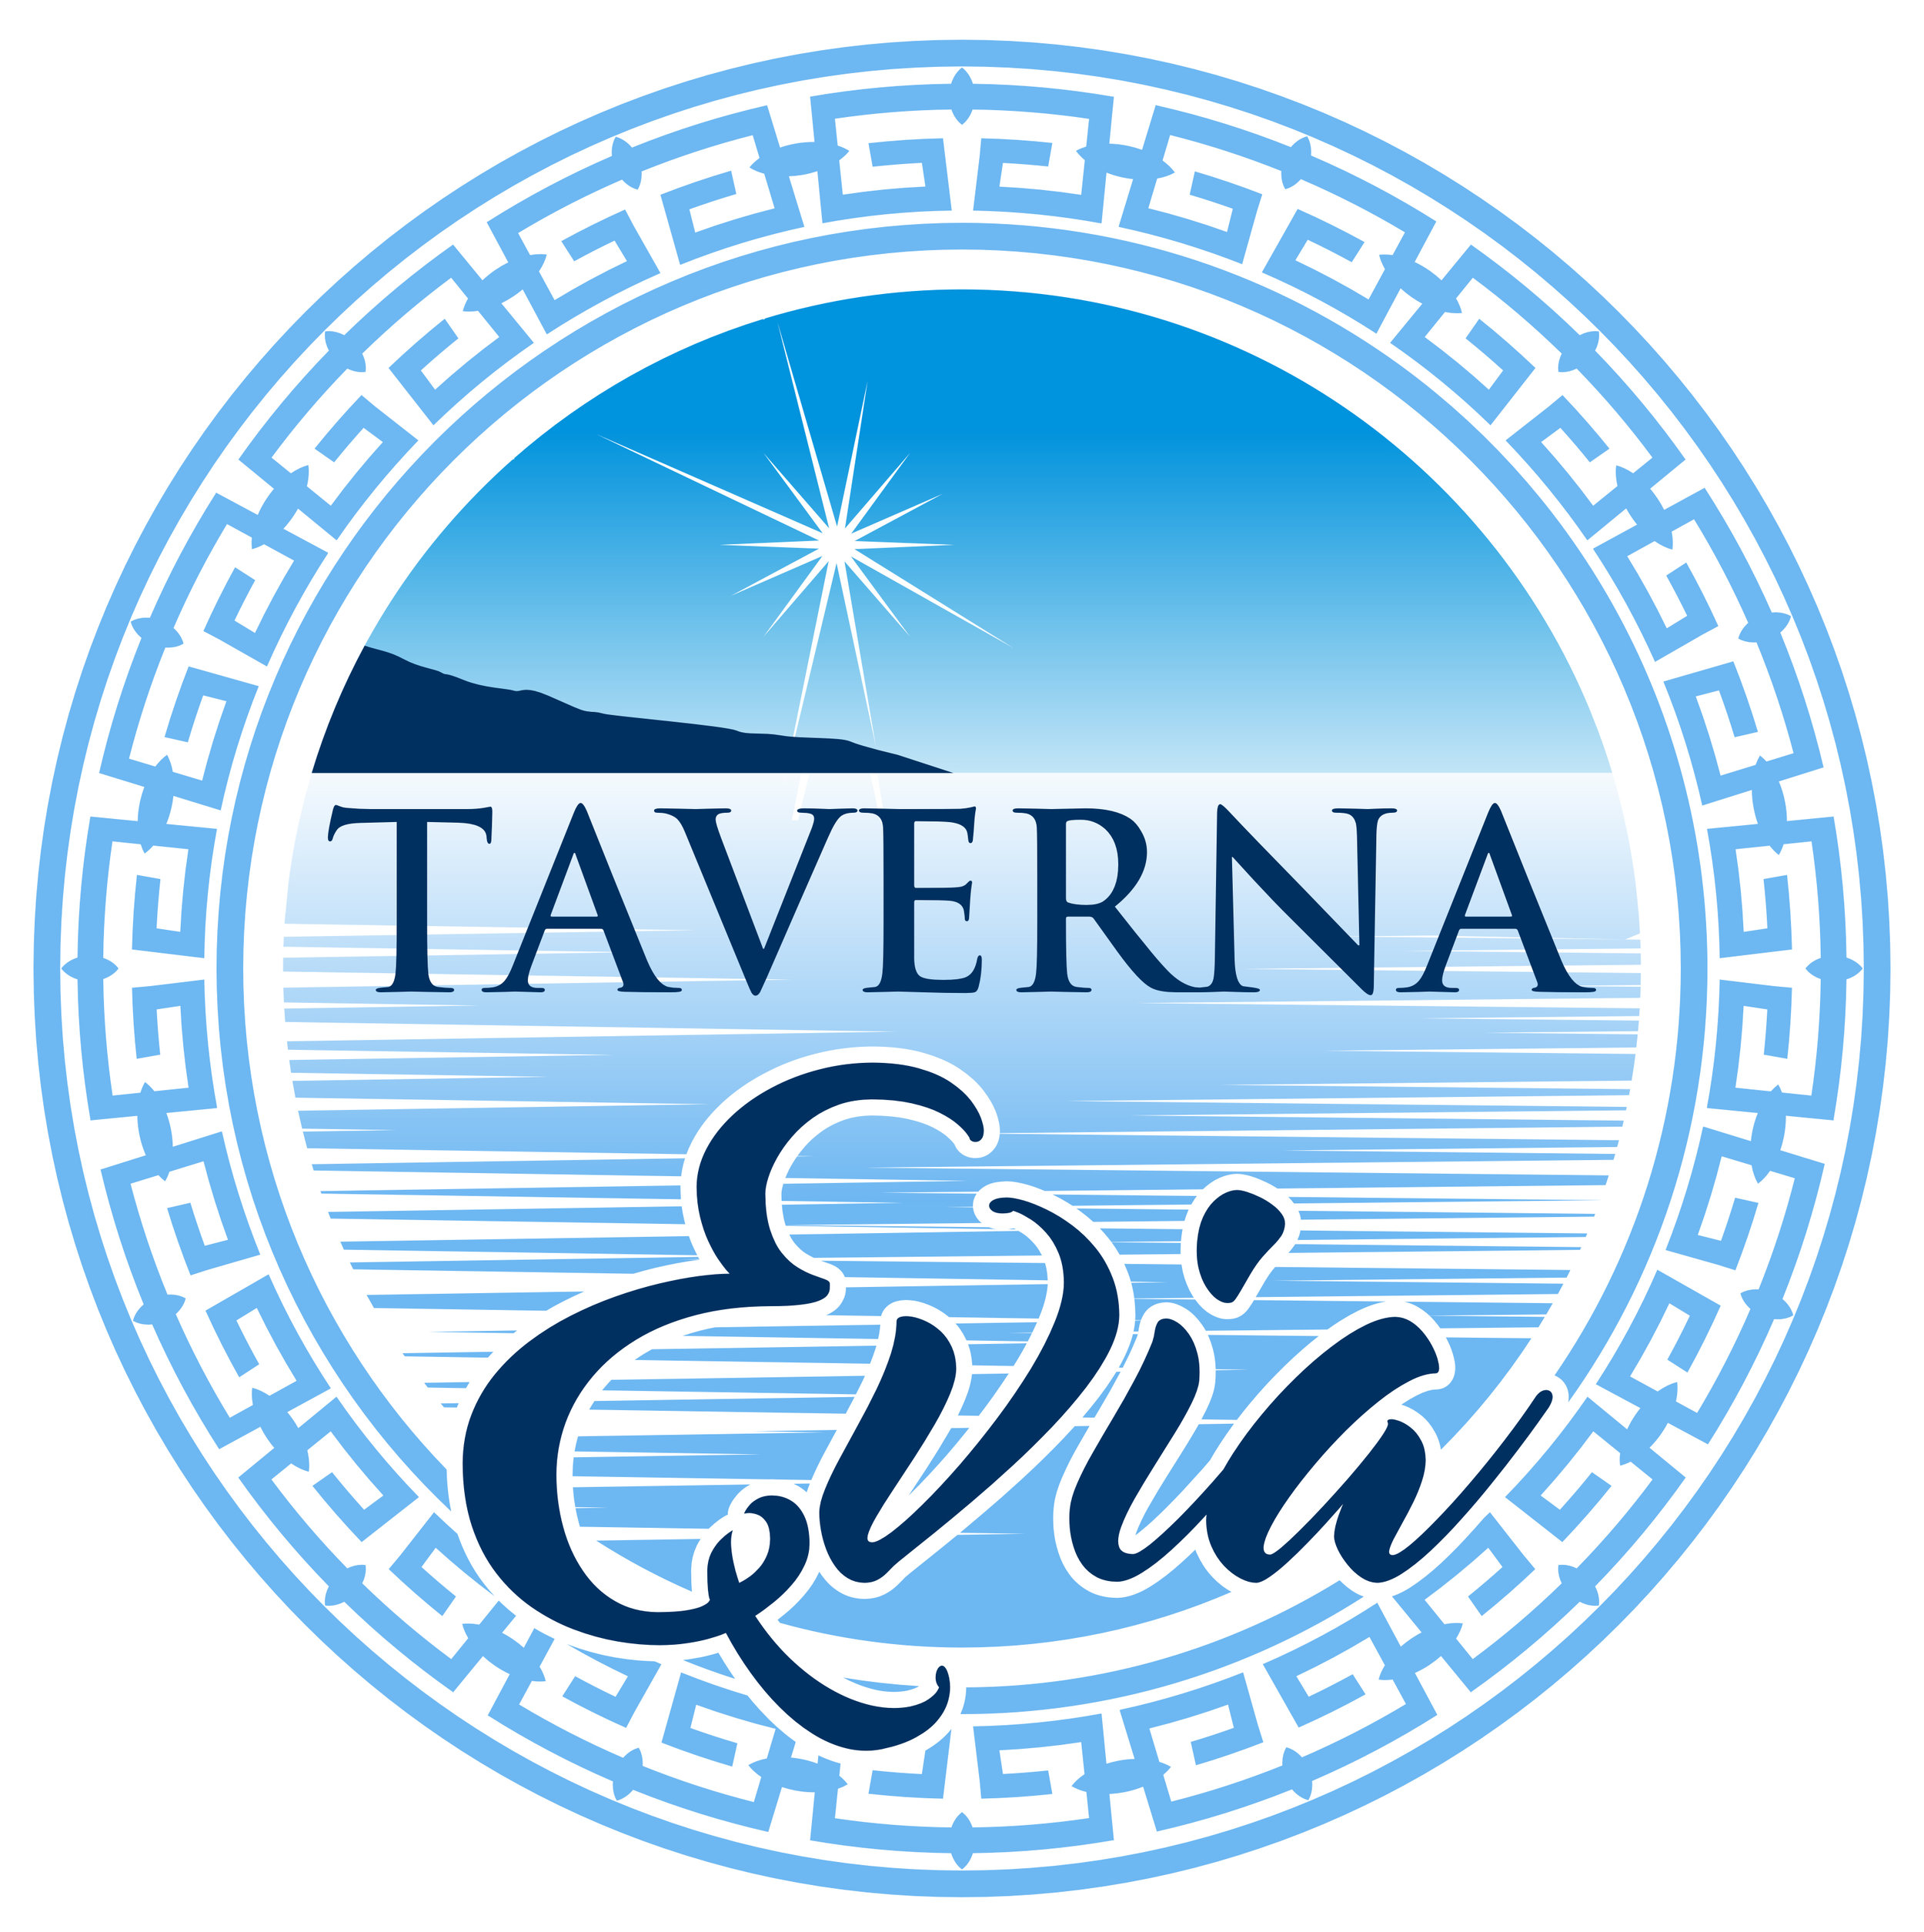 Taverna Evia